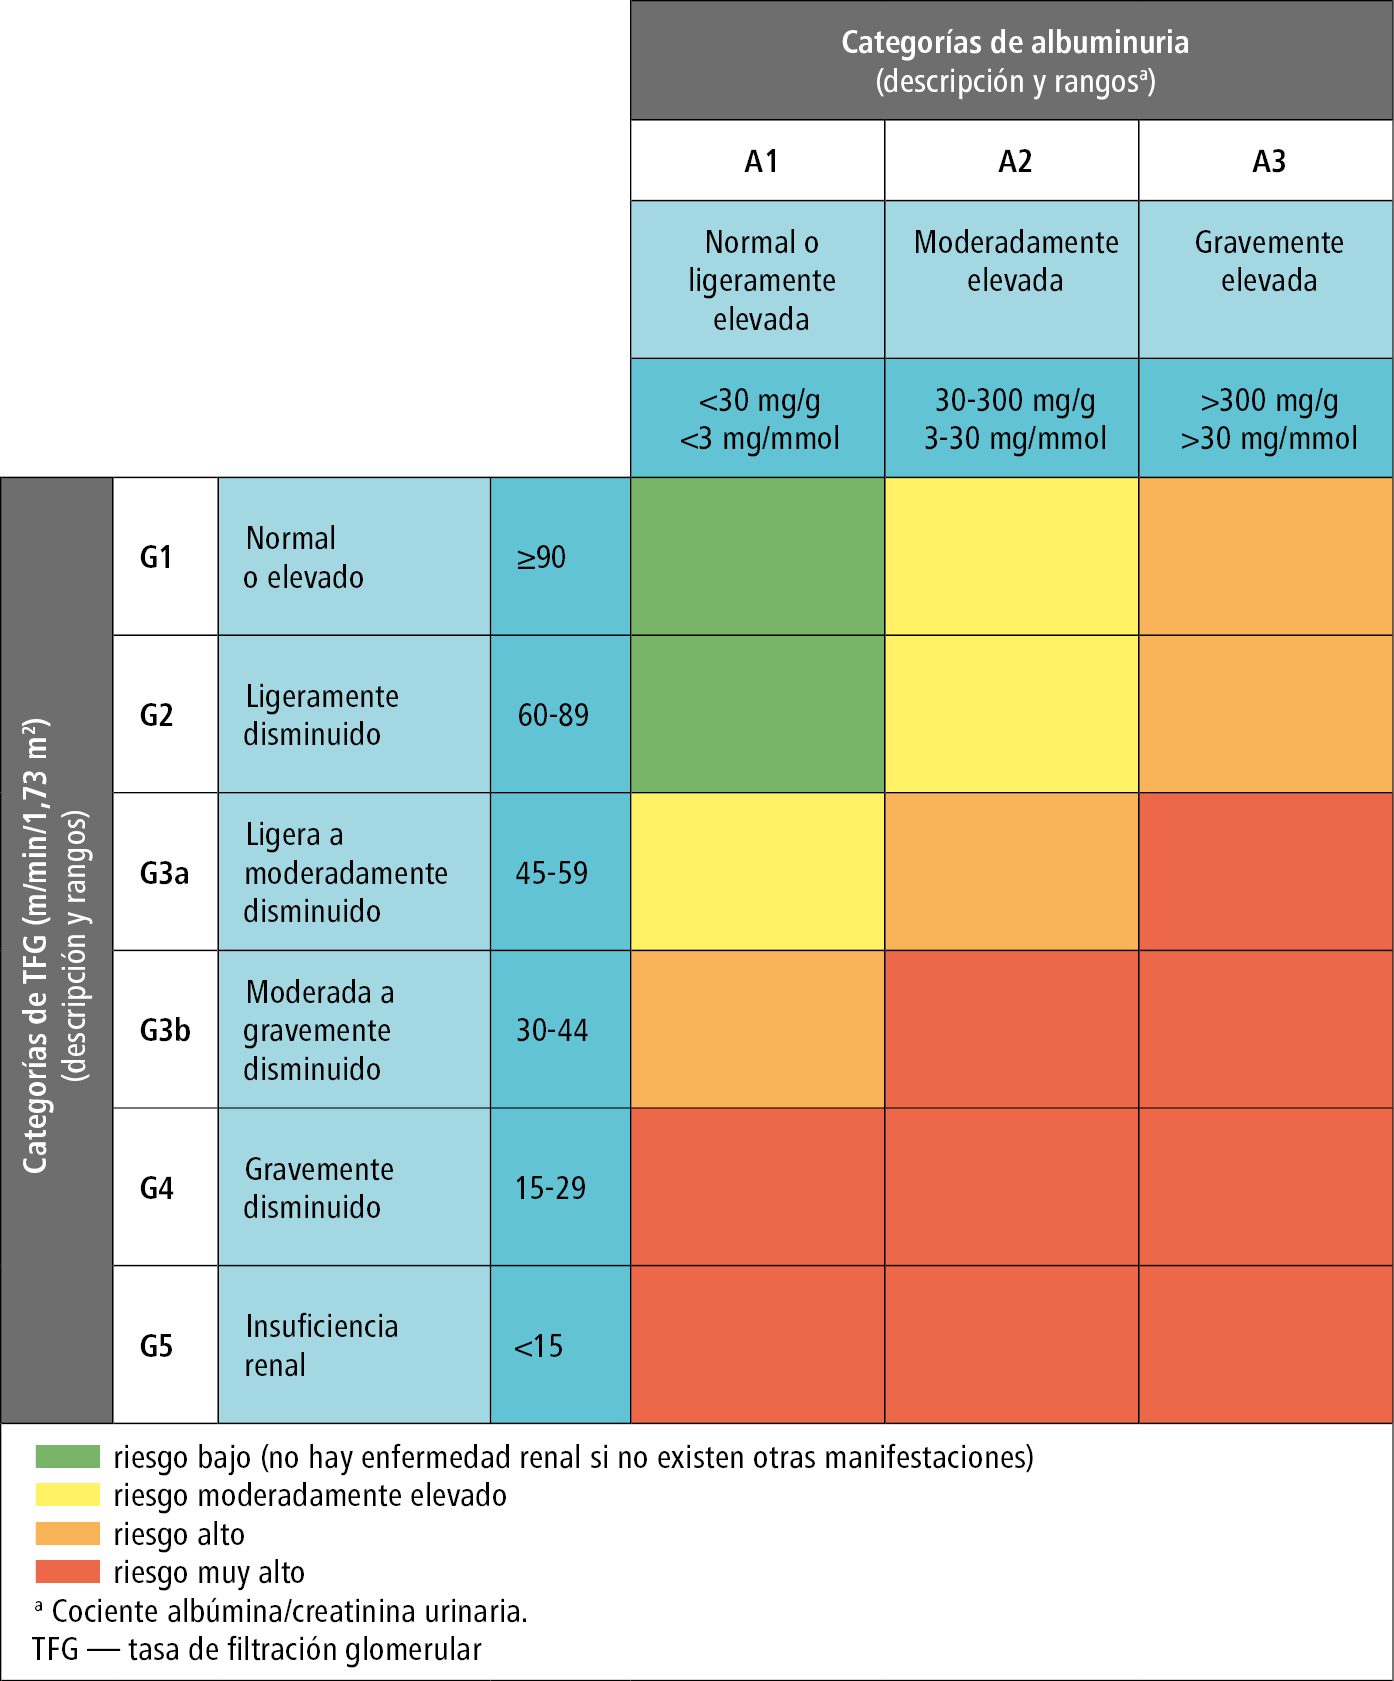    Fig. 15.3-1.  Pronóstico de la enfermedad renal crónica en función de la filtración glomerular y la albuminuria, a partir de KDIGO (2012) 